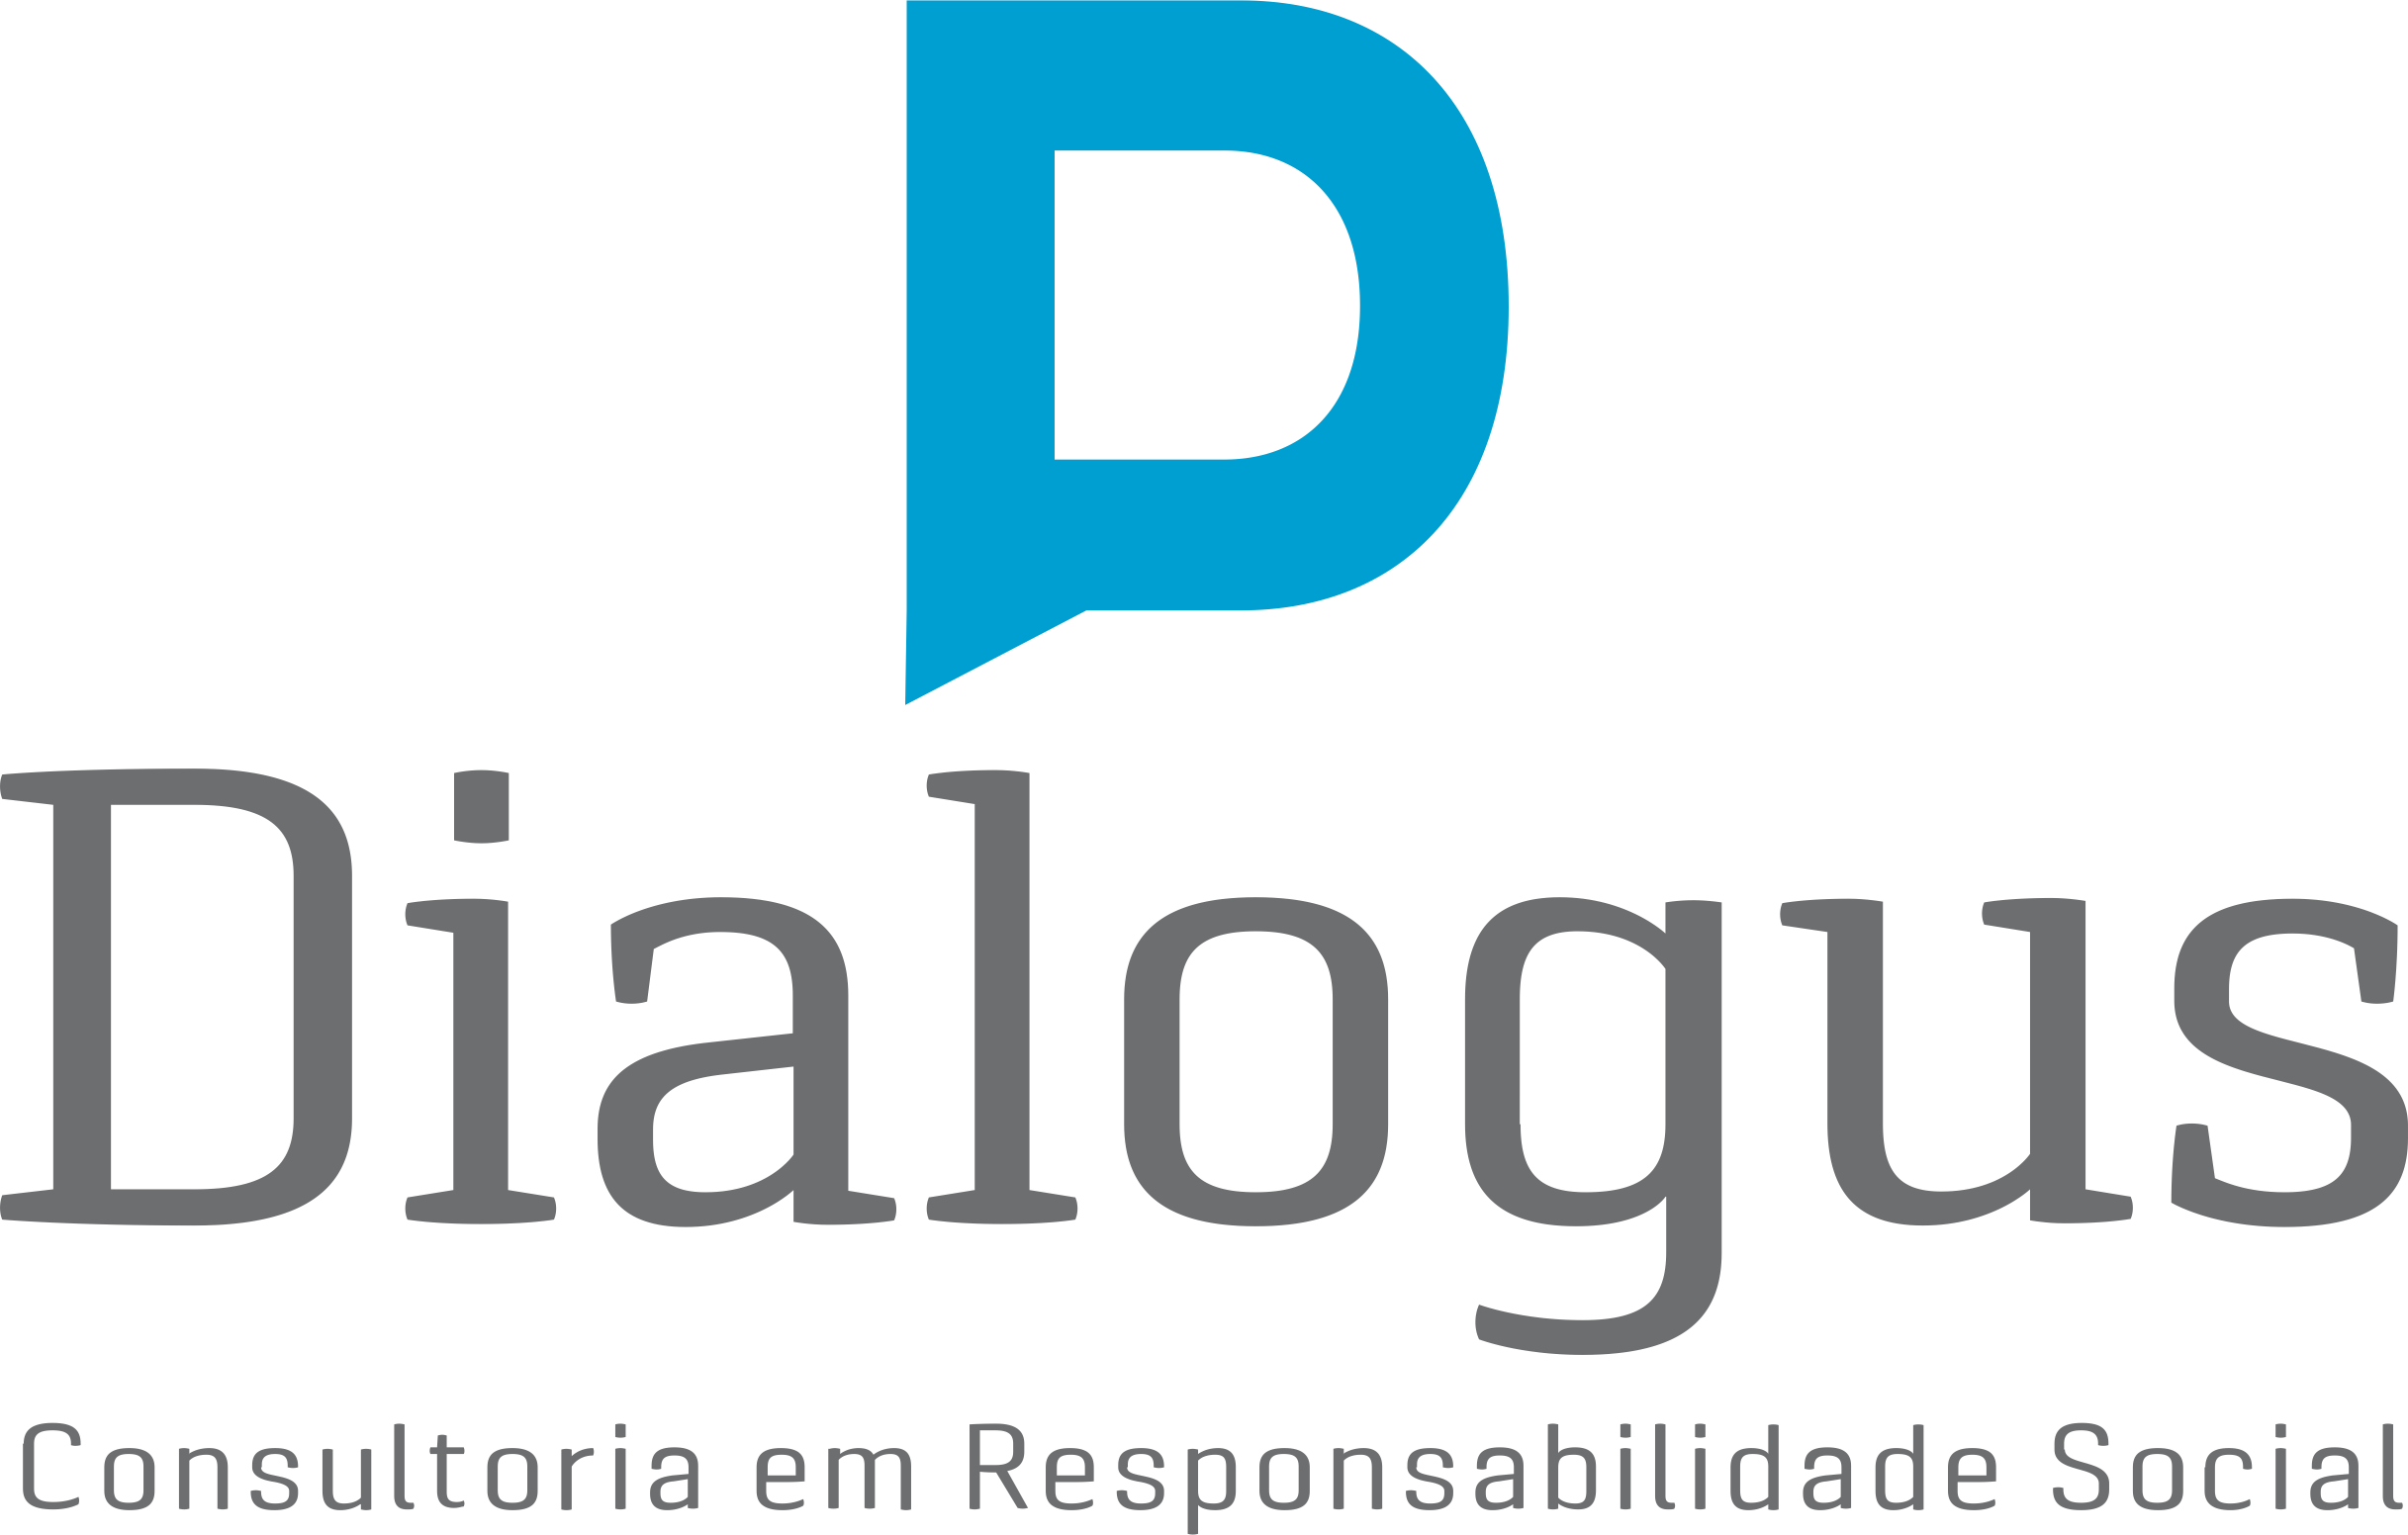 Dialogus Responsabilidade Social - Consultoria - Planejamento Estratégico com foco na Sustentabilidade - Fortaleza/CE